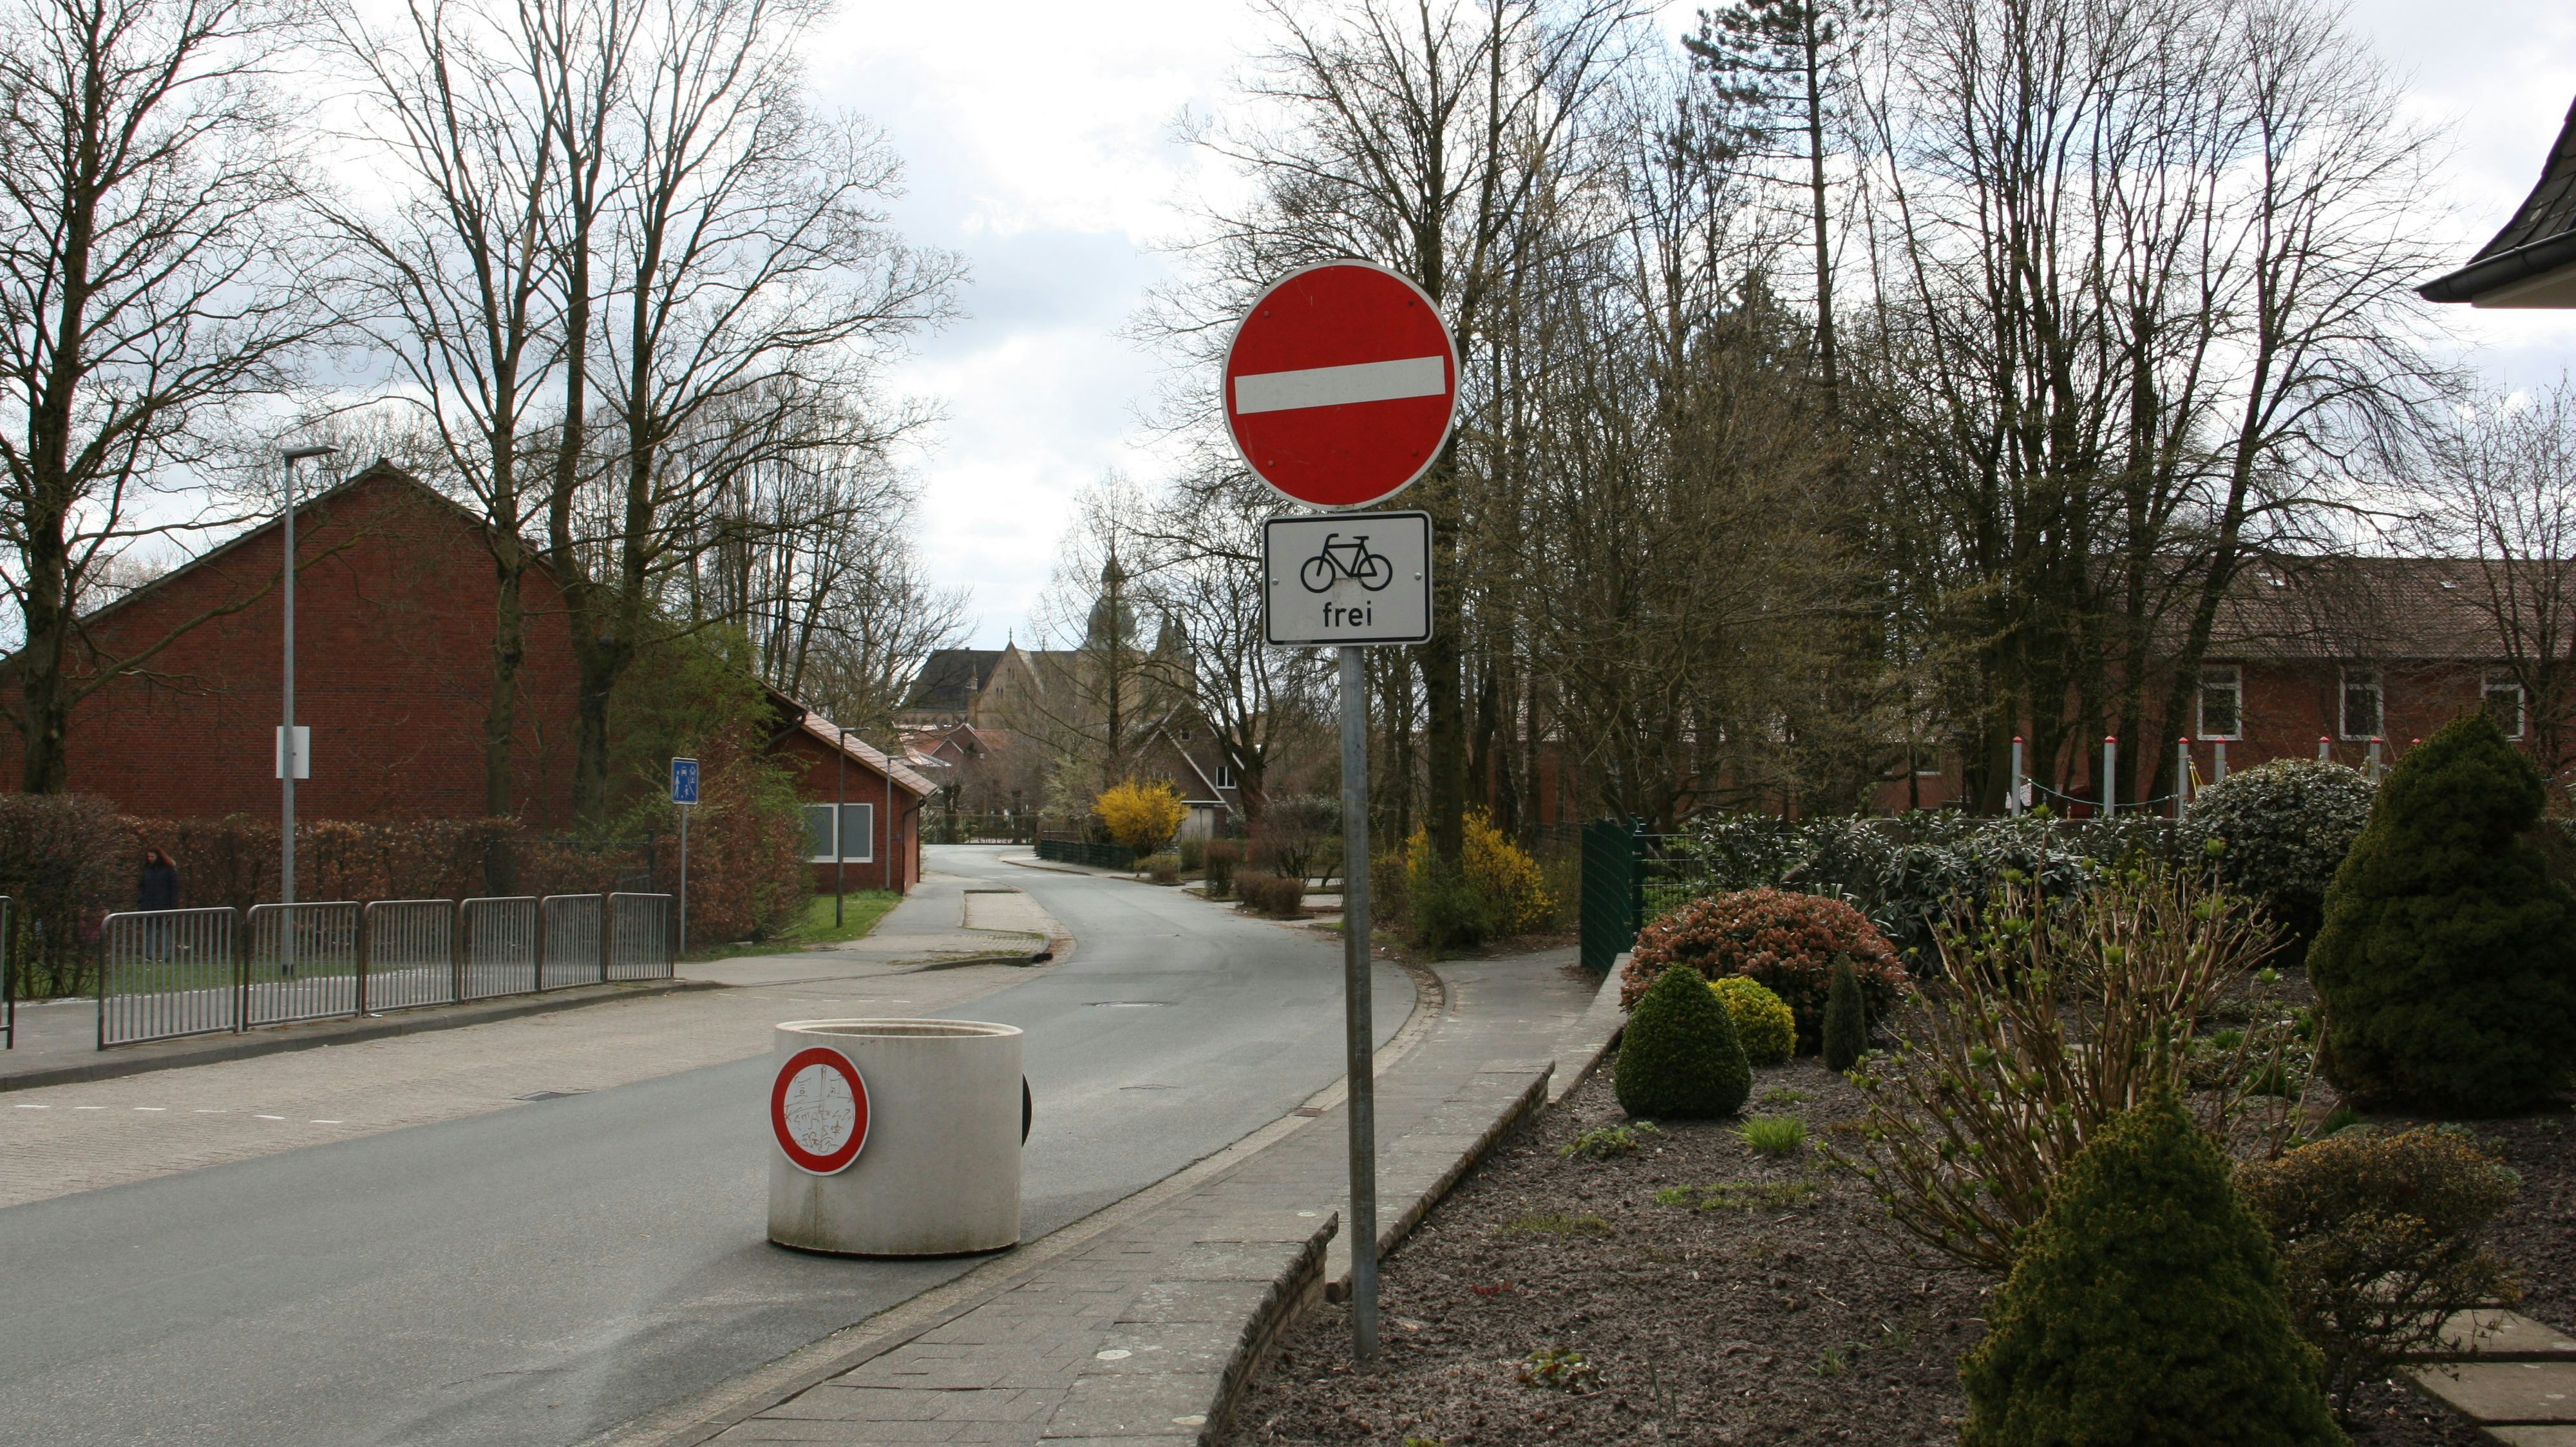 Freie Fahrt für Fahrradfahrer: Die Dammer Einbahnstraße "Grüner Weg" ist für Radfahrer in Gegenrichtung geöffnet. Foto: Kessen